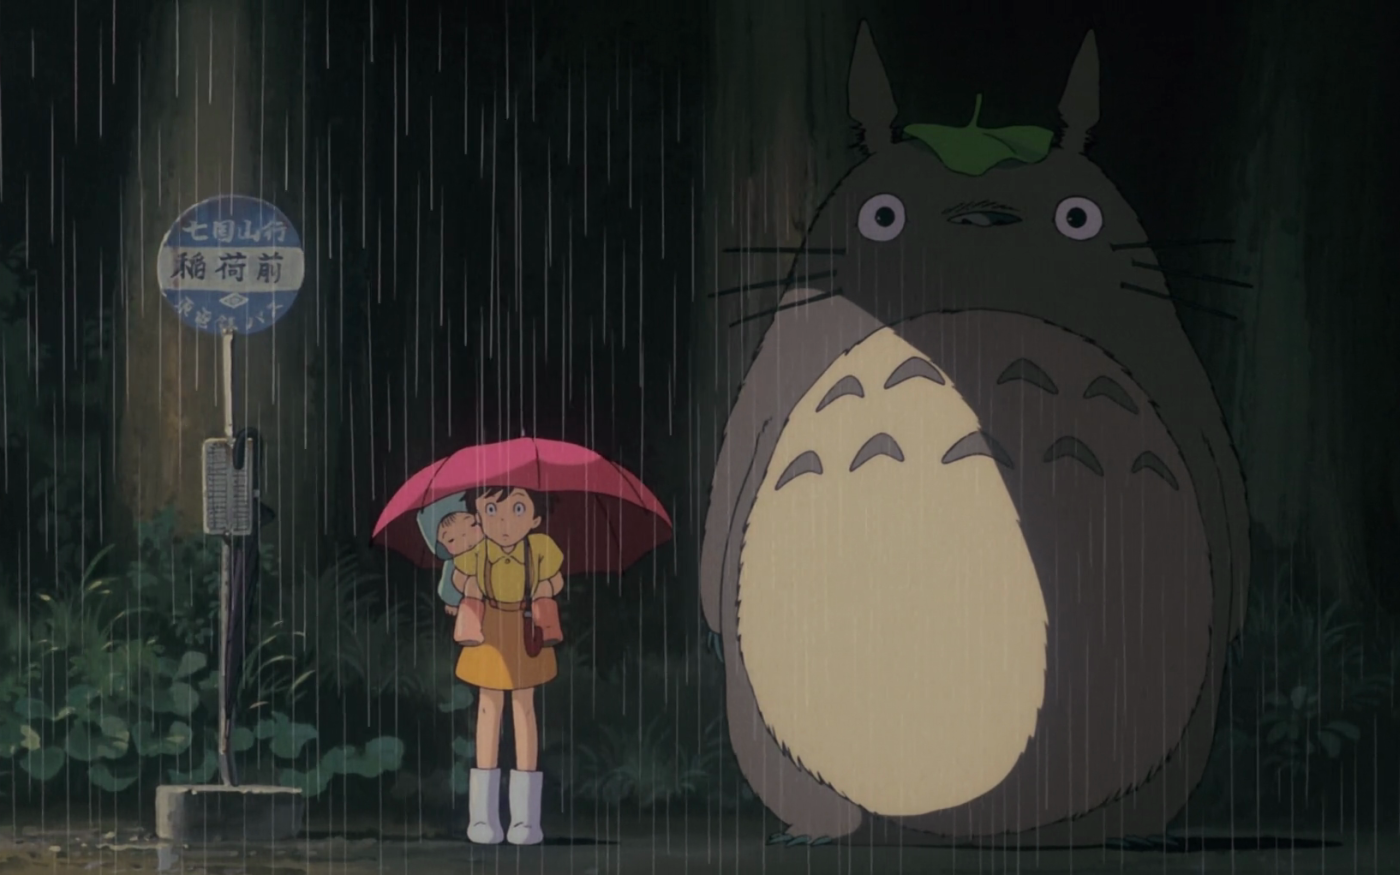 Les fans de Mon voisin Totoro ont identifié des thèmes shintos dans le film, ce que réfute son créateur (Studio Ghibli)